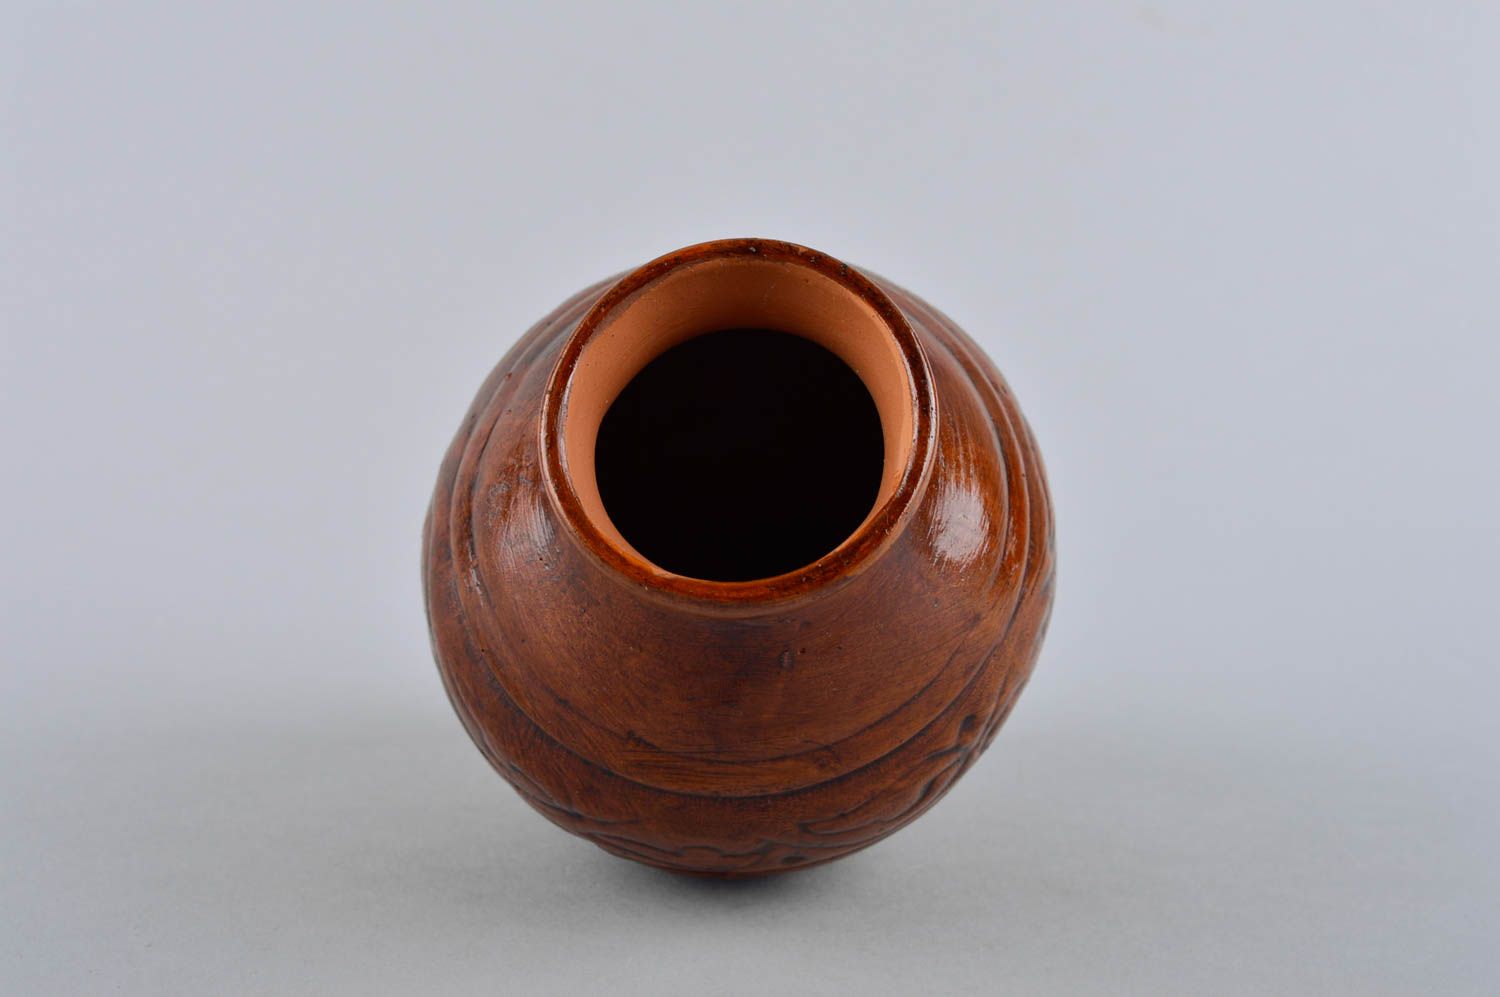 15 oz ceramic shelf decorative pitcher for home décor 0,6 lb photo 4